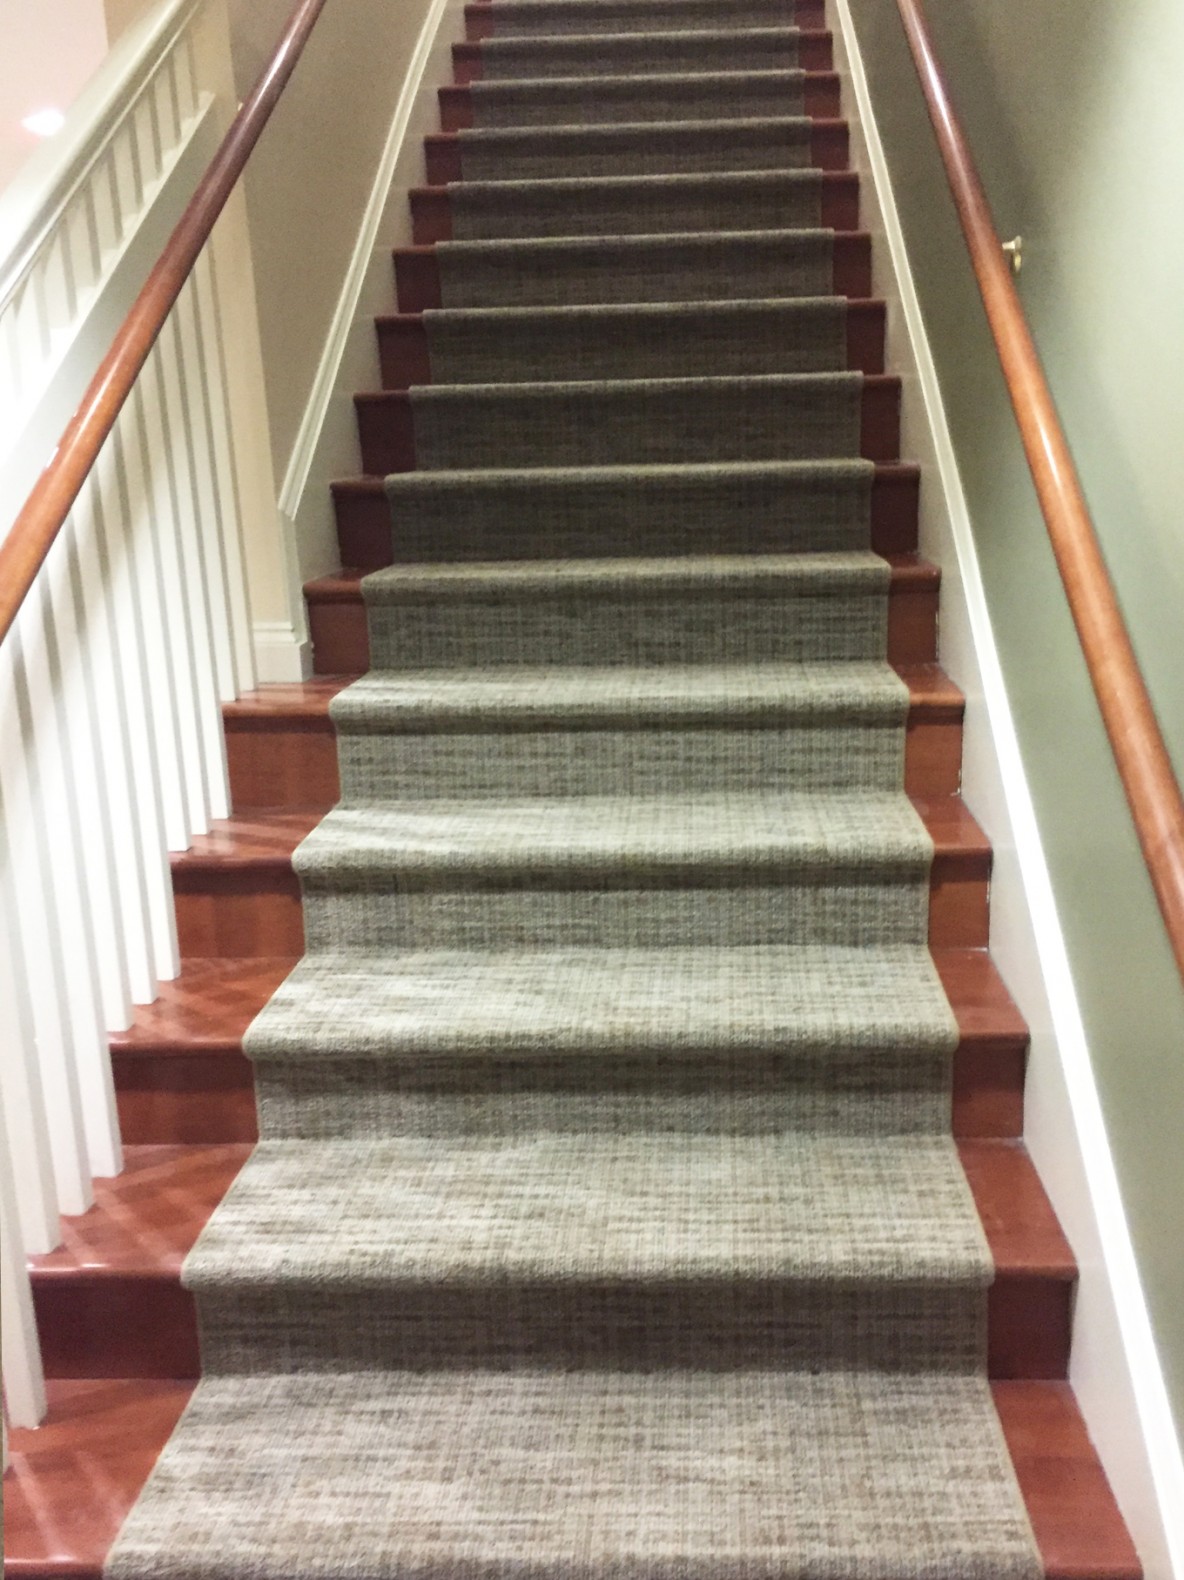 Stairs, Patterned Carpet tile, Porcelain tile, Independent Assisted living